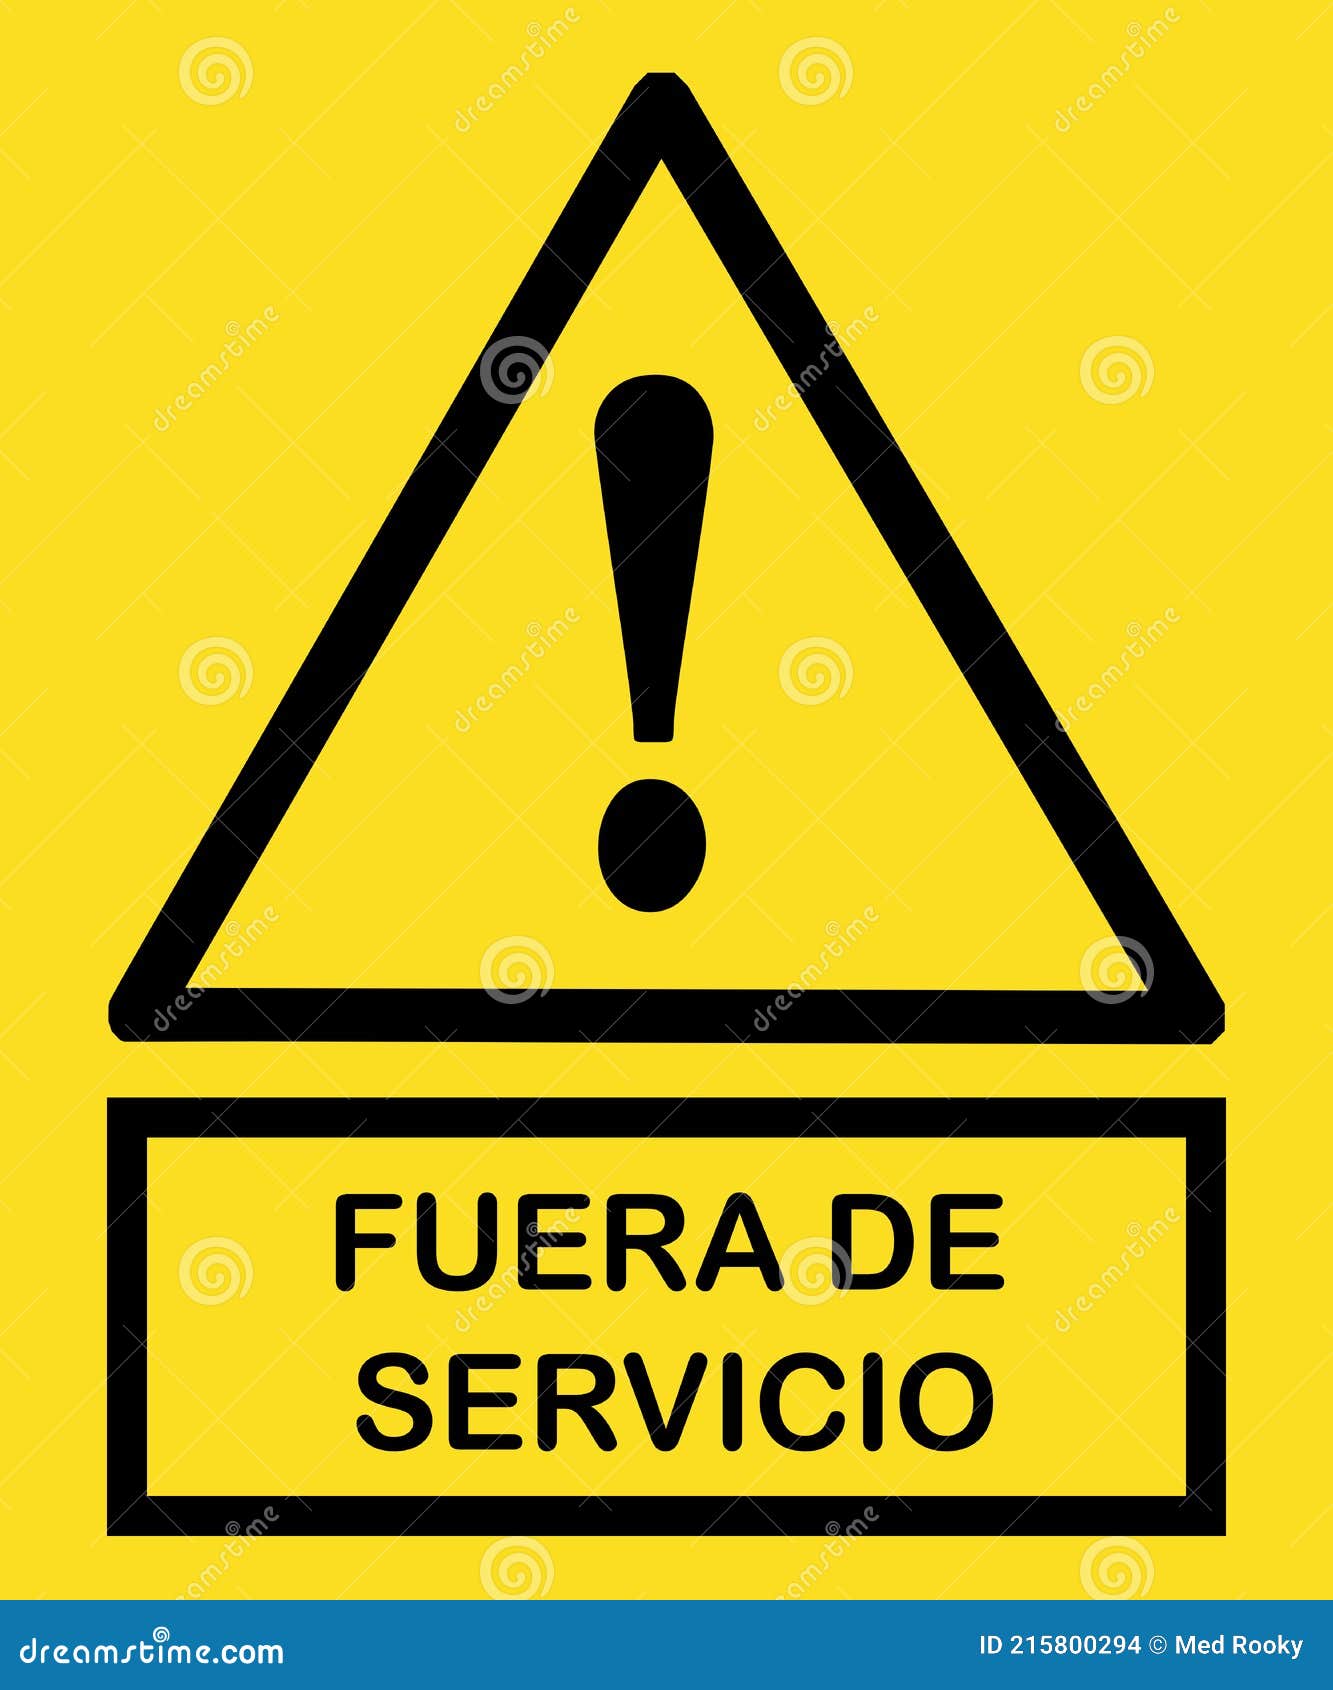 fuera de servicio seÃÂ±al : out of service sign